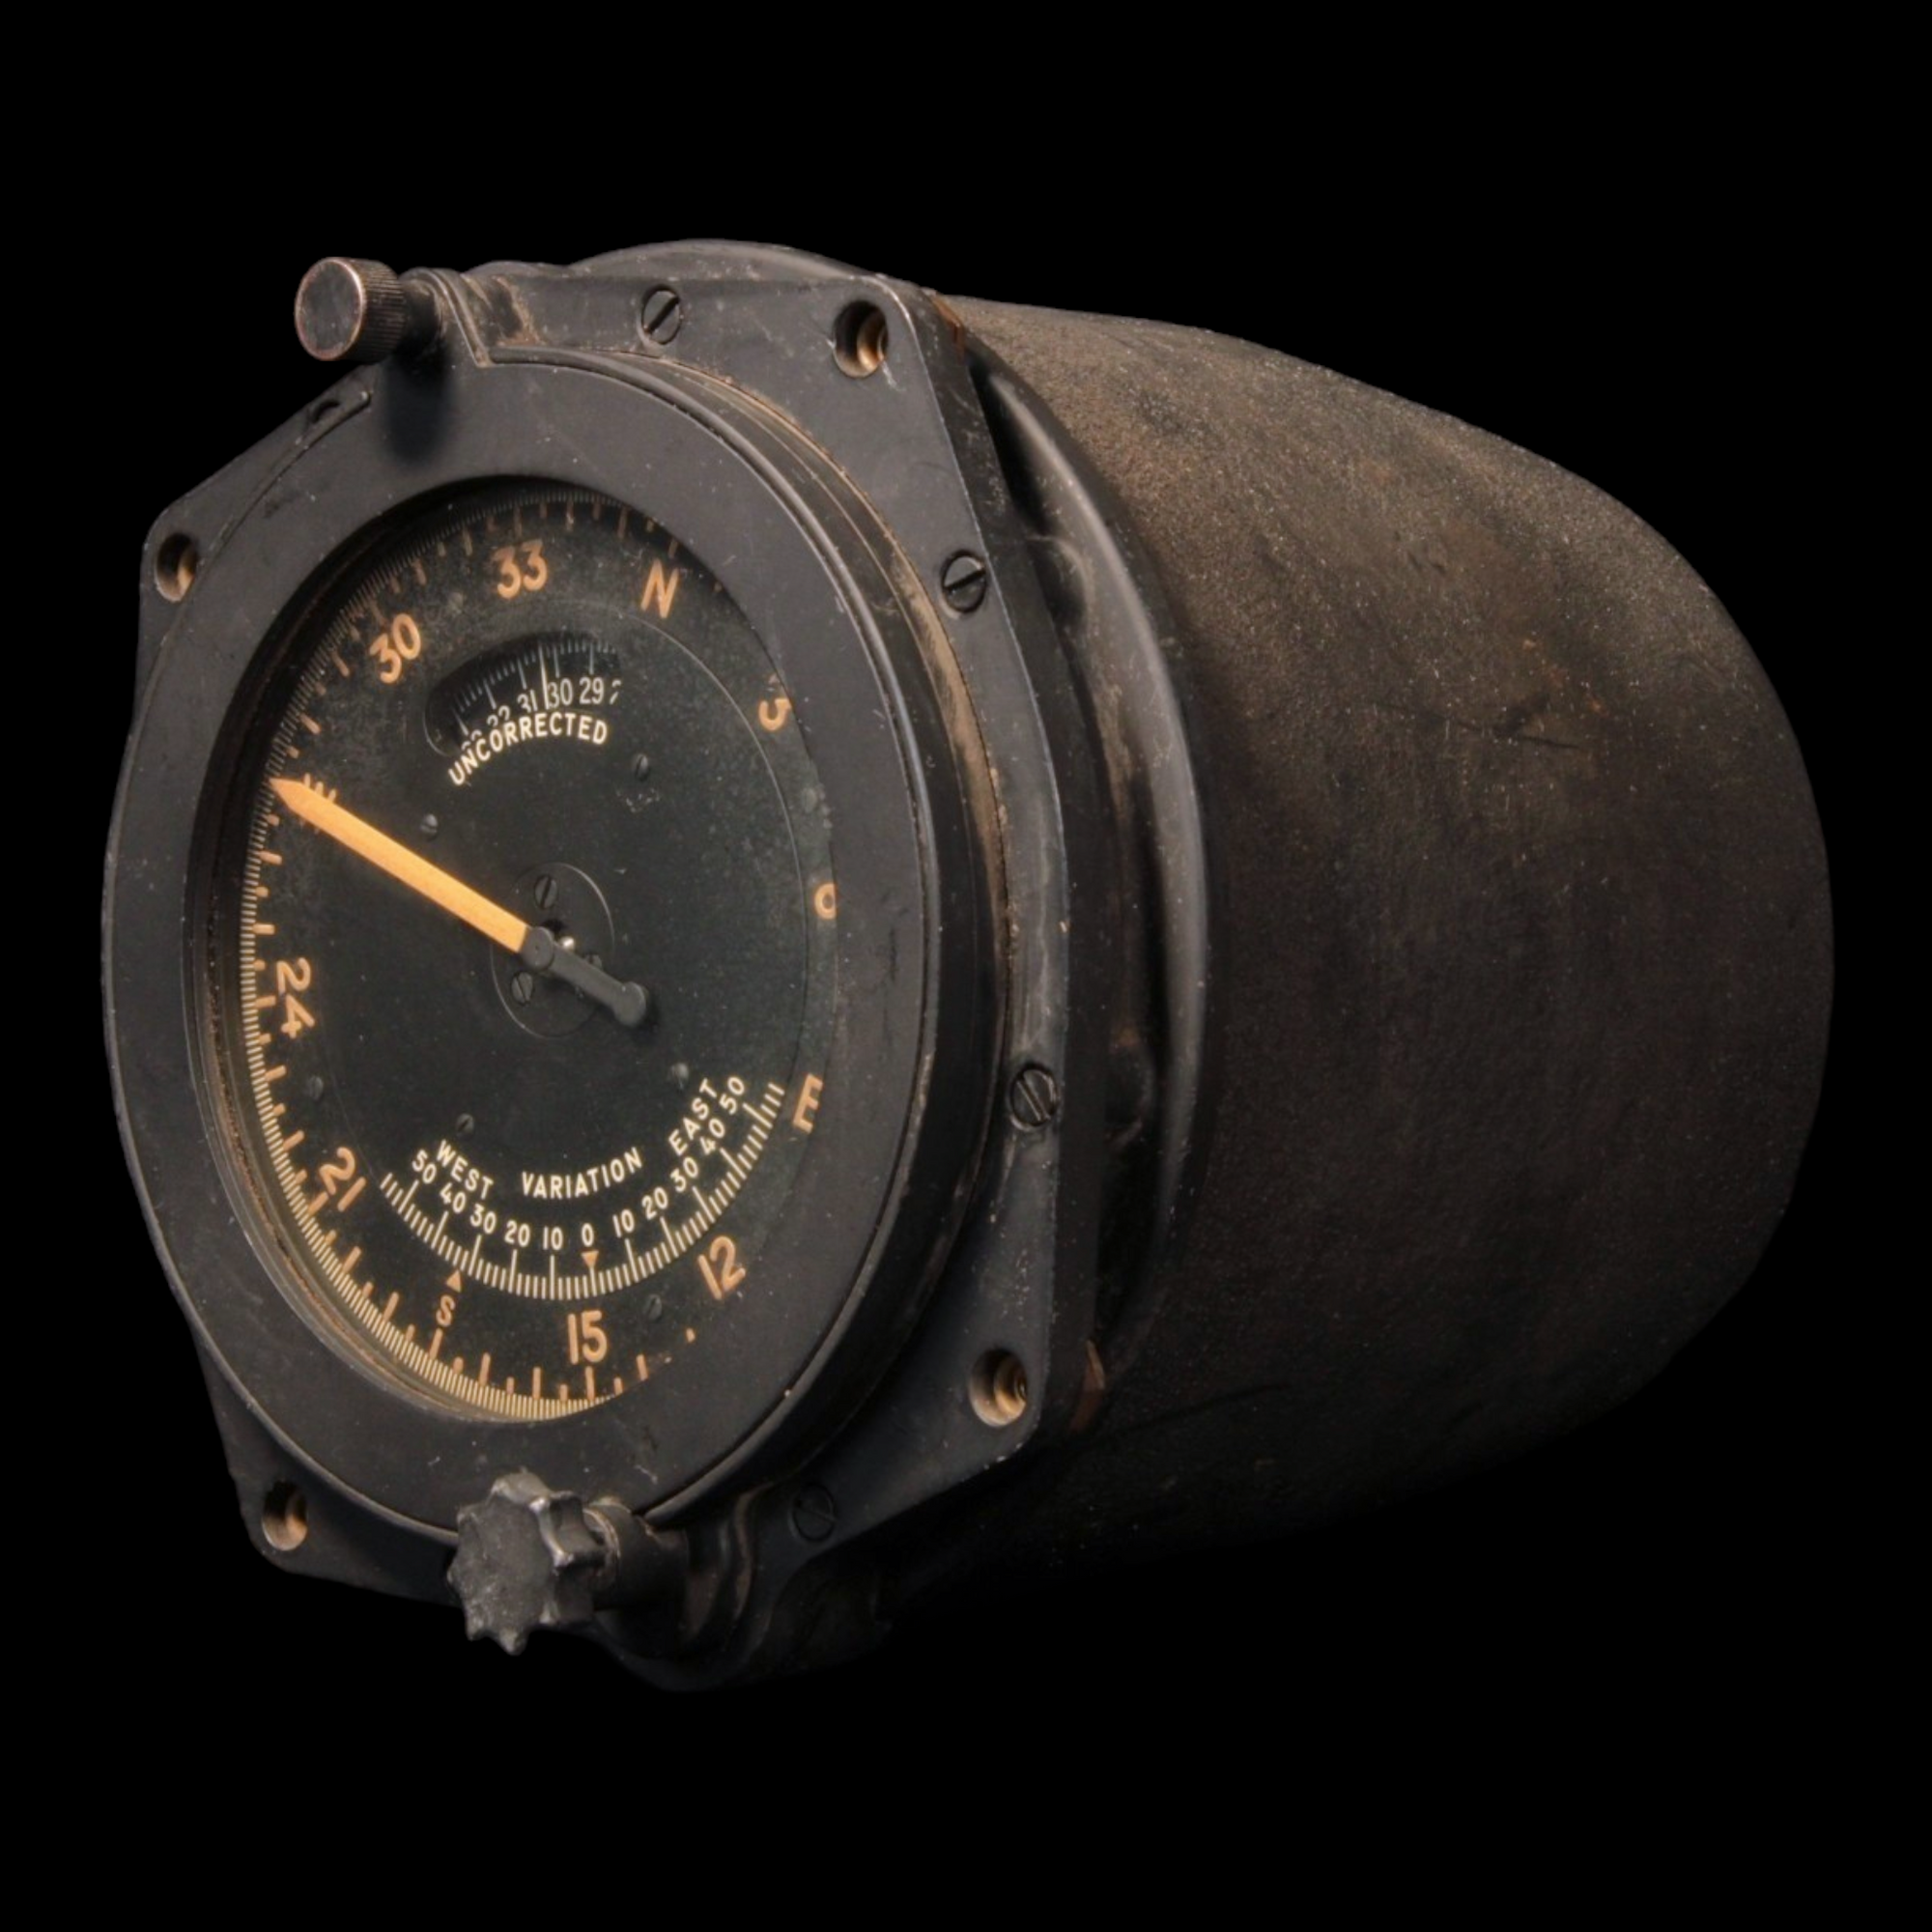 WWII Aircraft Instrument, Master Compass Indicator (Bendix AN5752–2) - 1940s - World War II